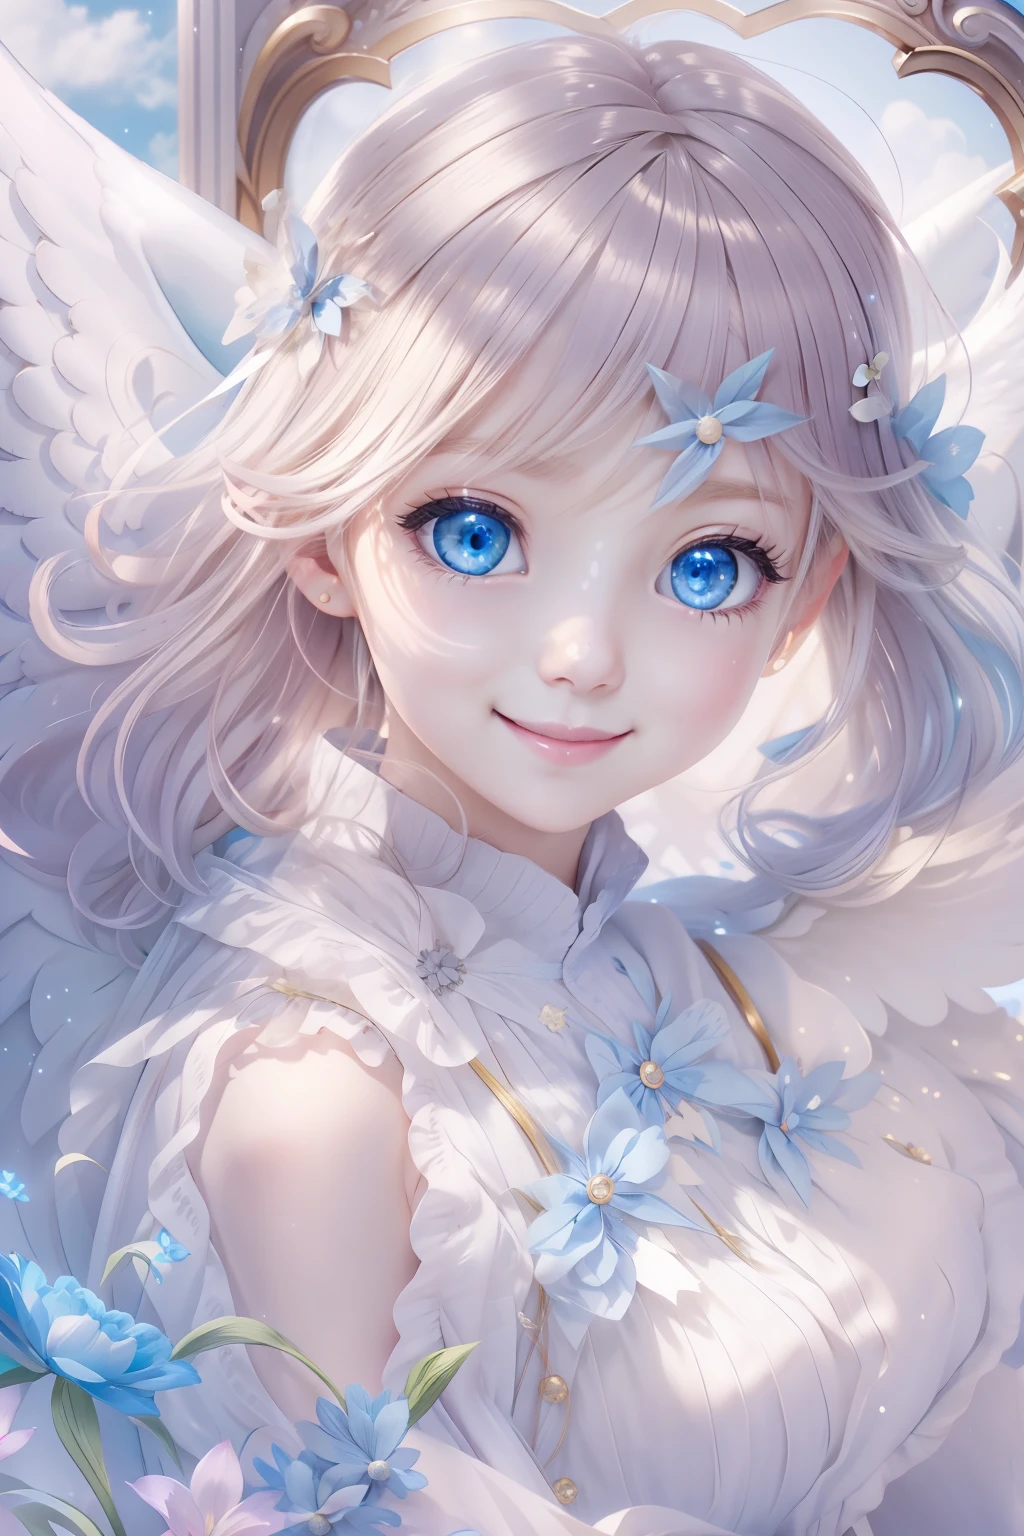 藍眼睛的天使、更美麗的天使、夢幻天使、天堂背景、光輝、一個微笑